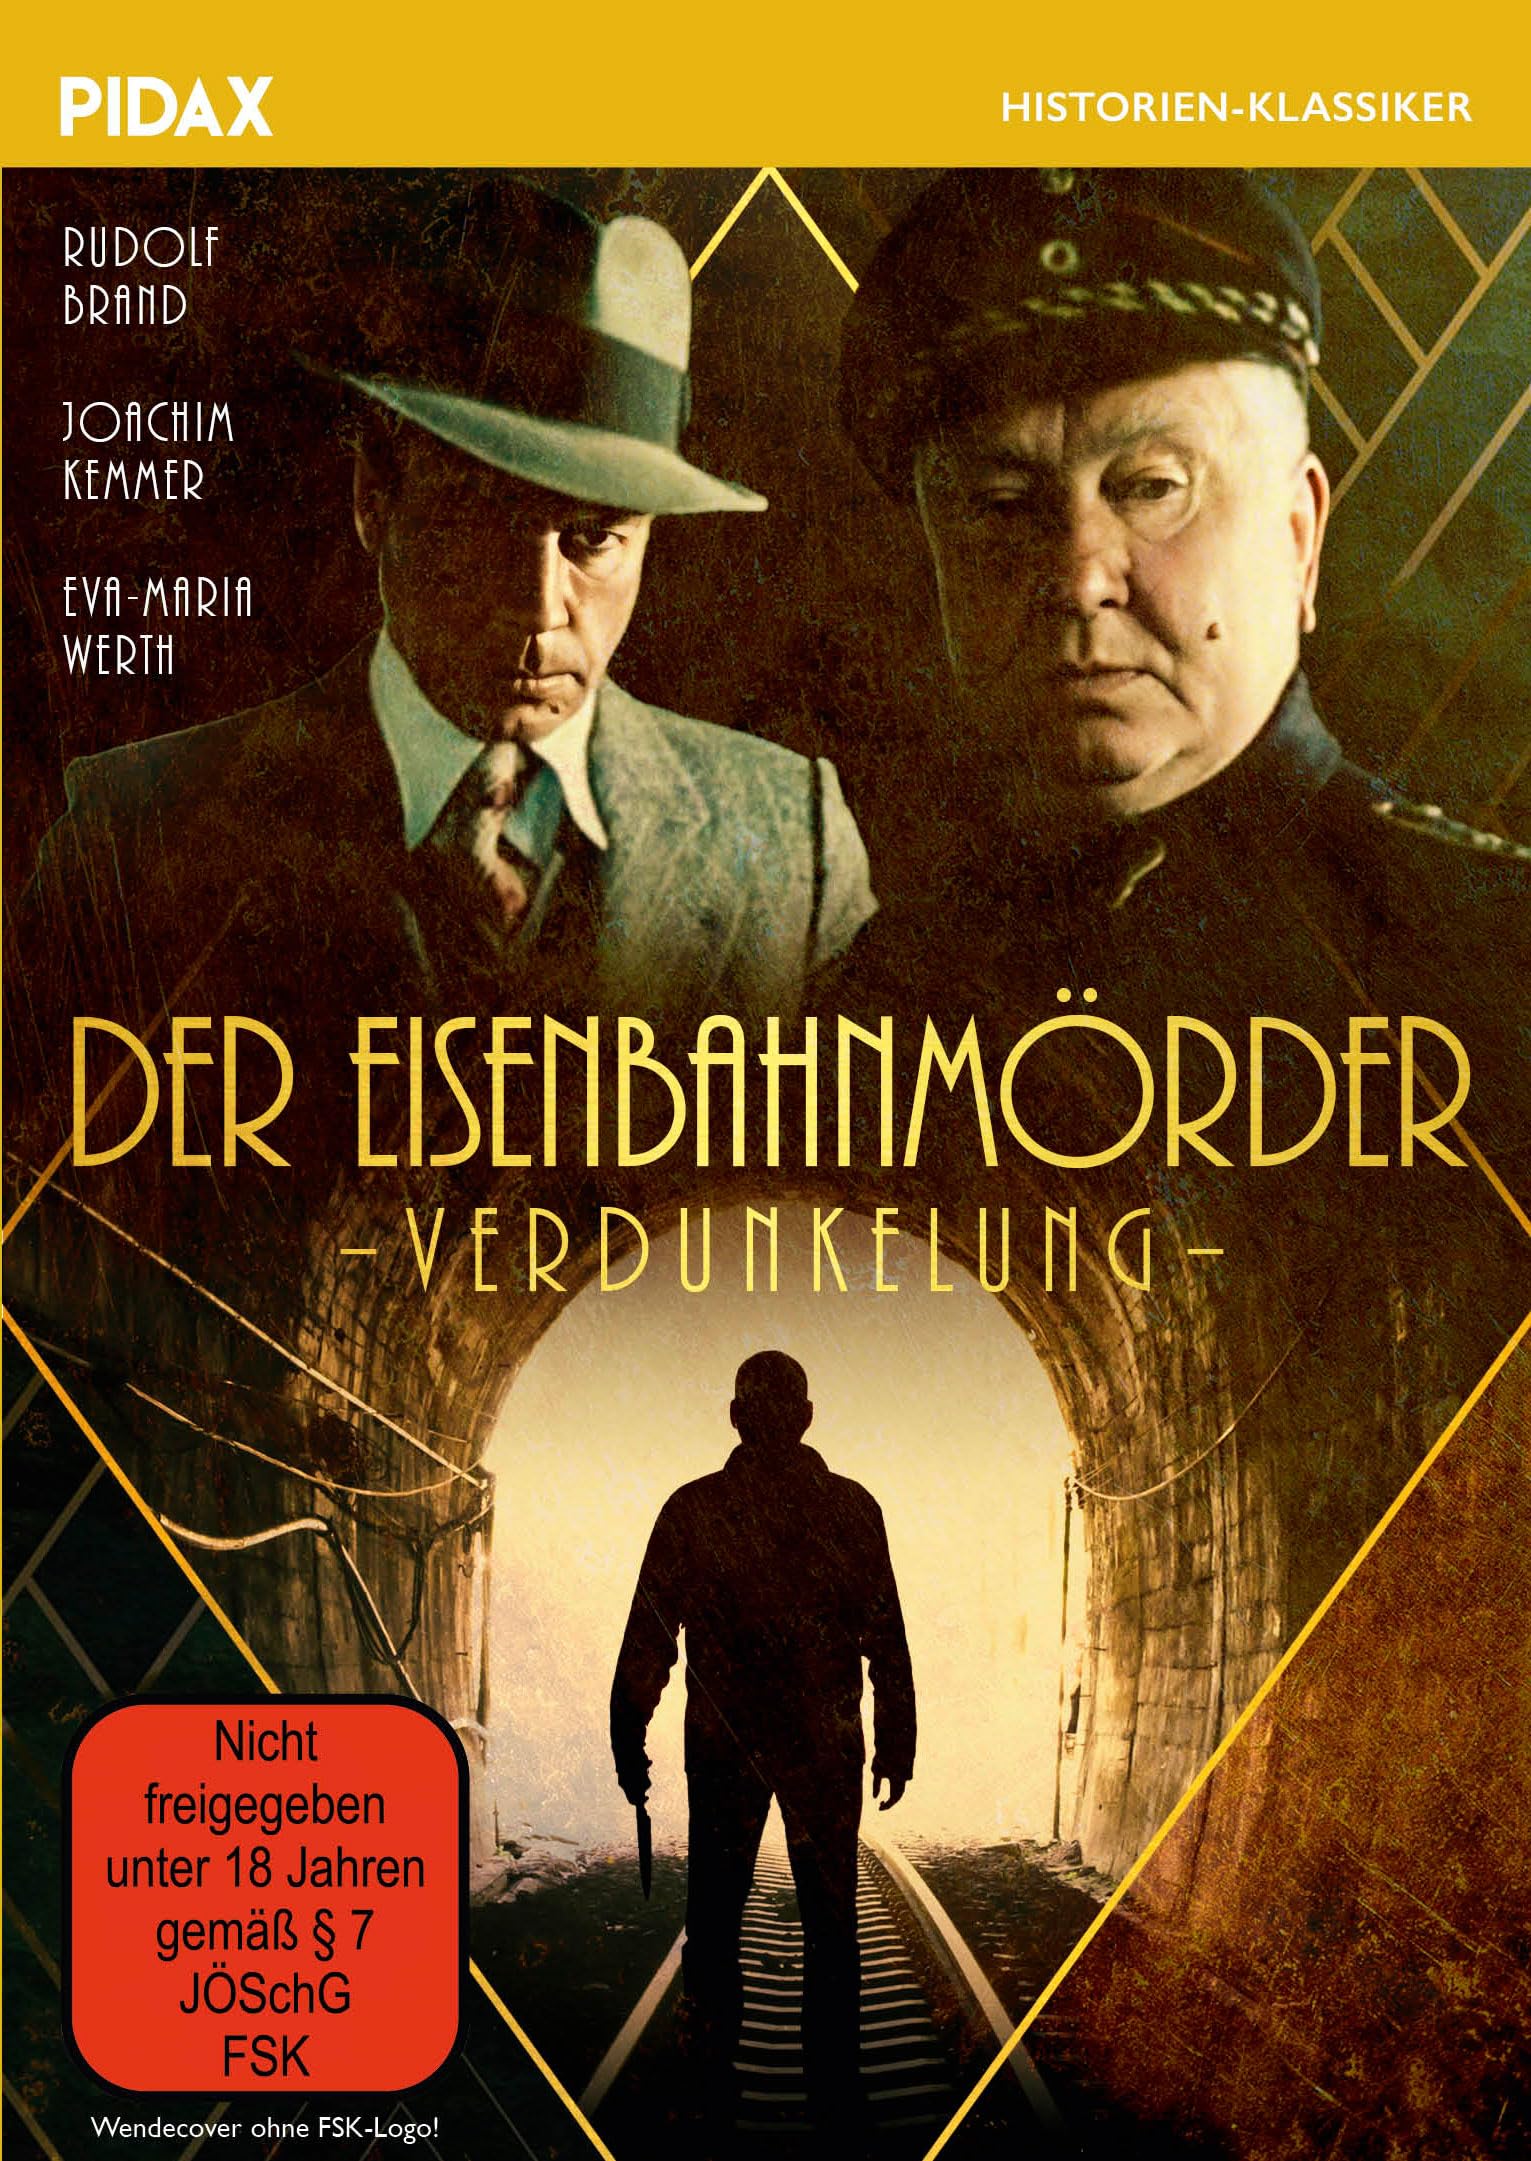 Der Eisenbahnmörder (Verdunkelung) / Historischer Kriminalfilm